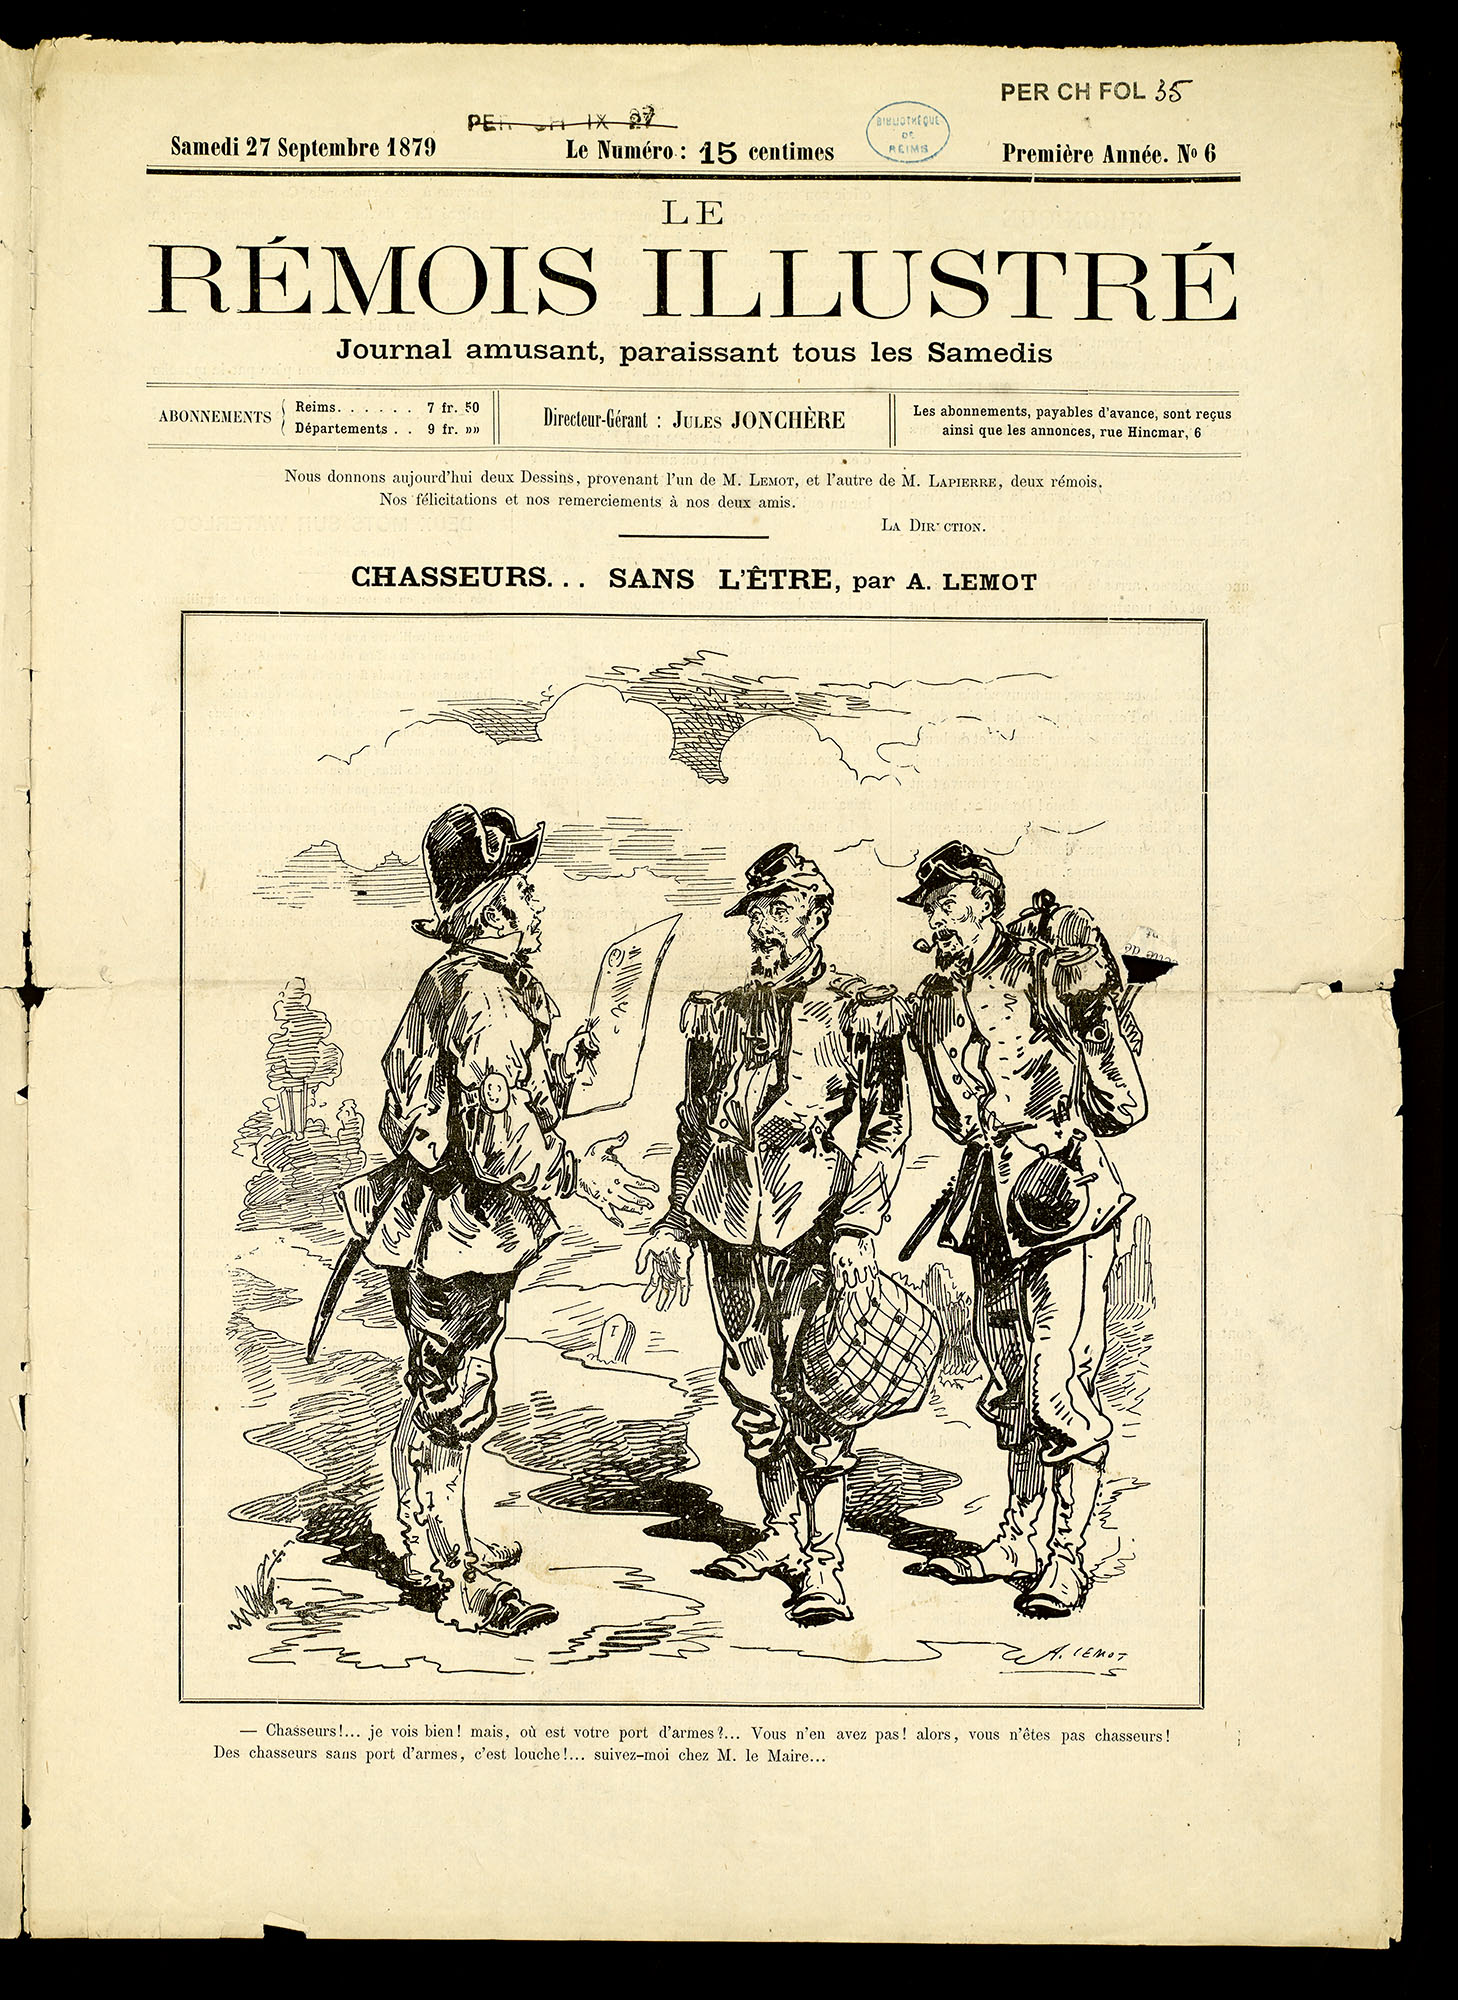 Le Rémois Illustré, Une du 27 septembre 1879. BM Reims, PER CH FOL 035